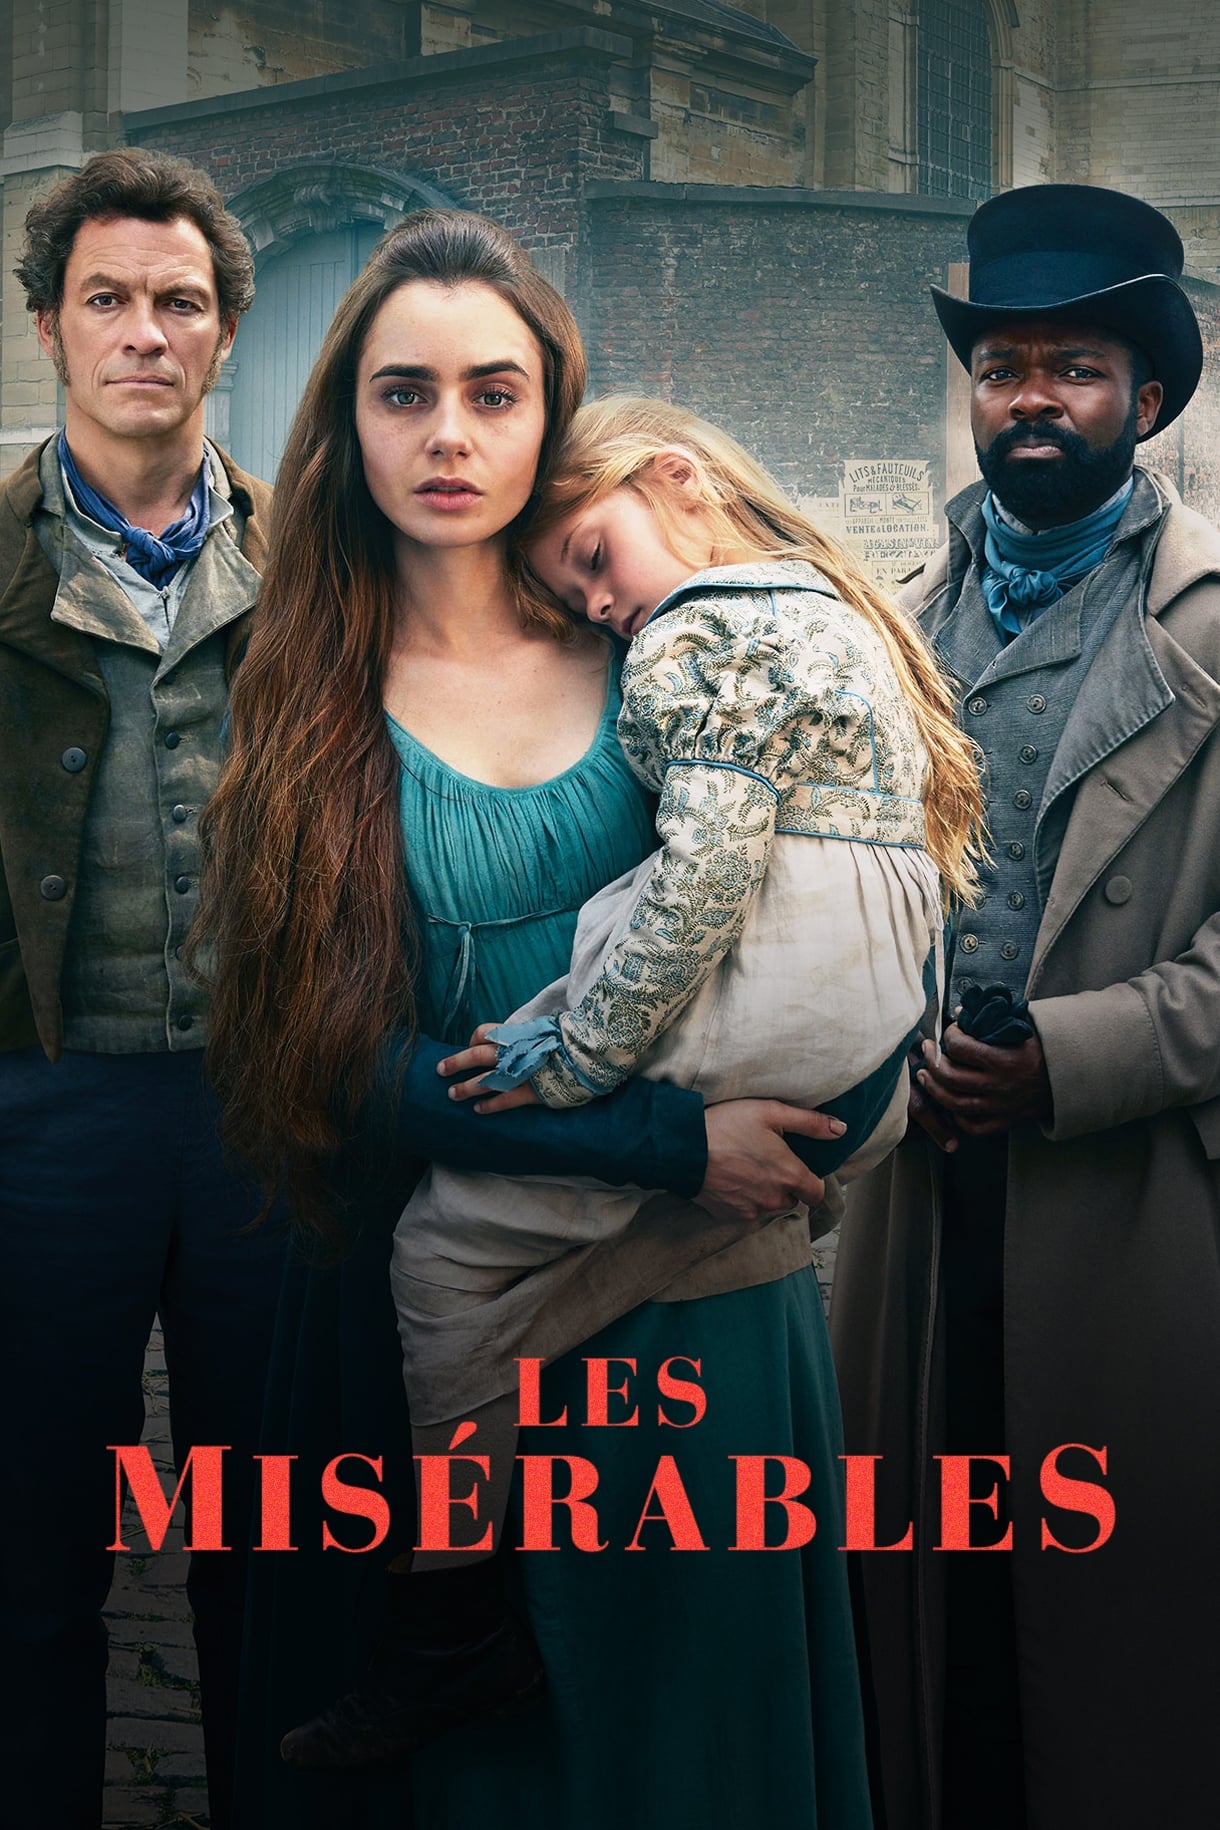 Les Misérables TV Shows About Redemption